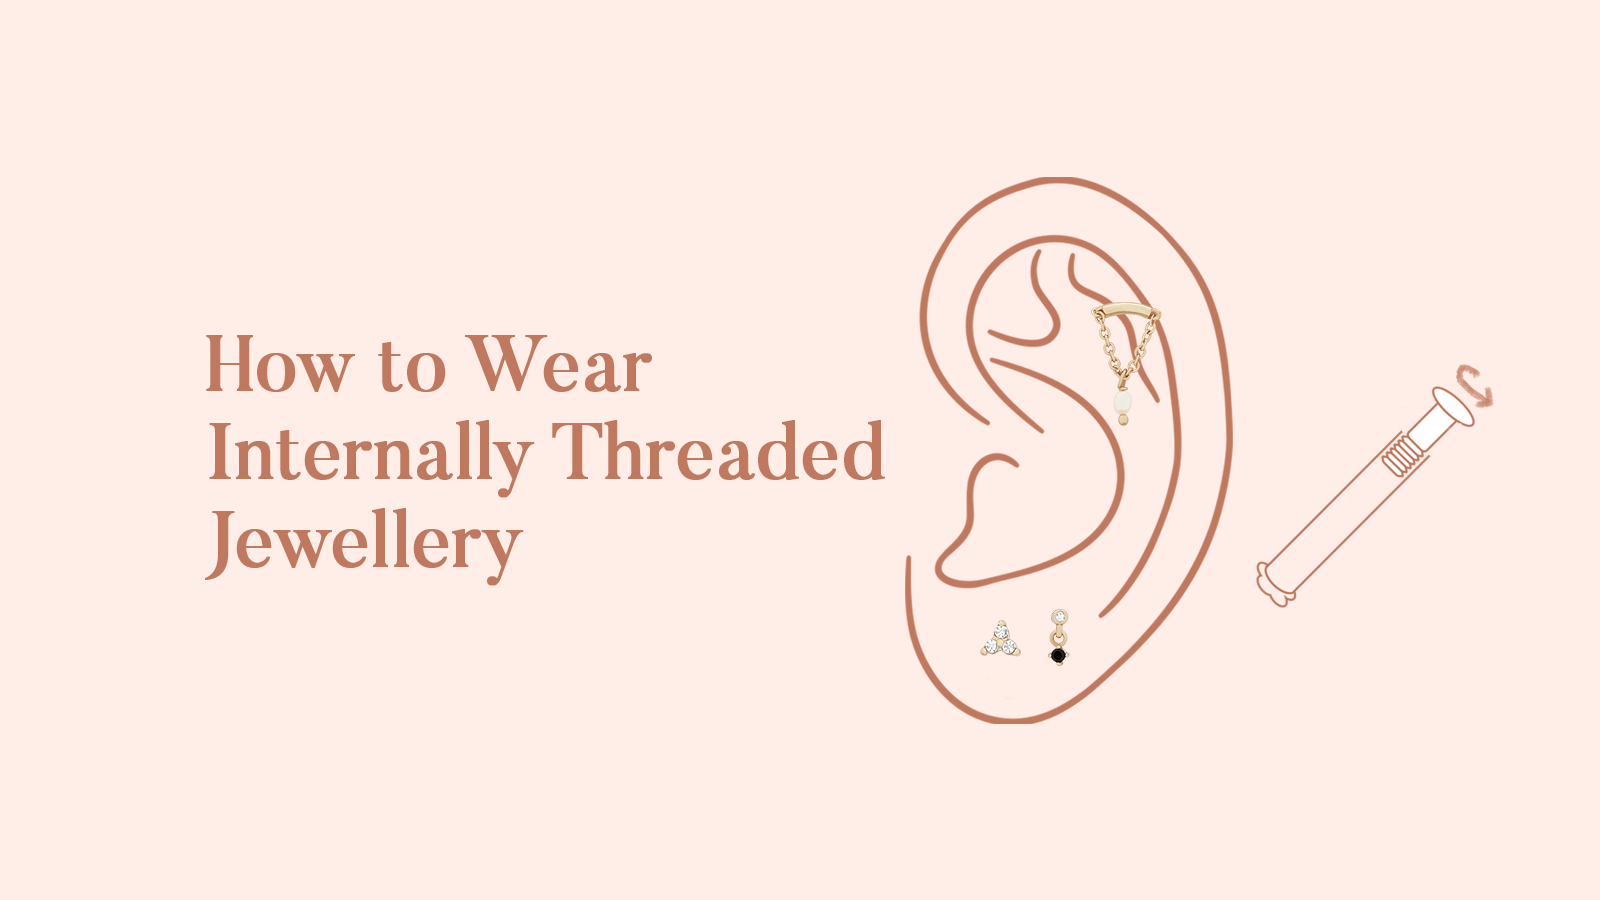 How to wear Internally Threaded Earrings